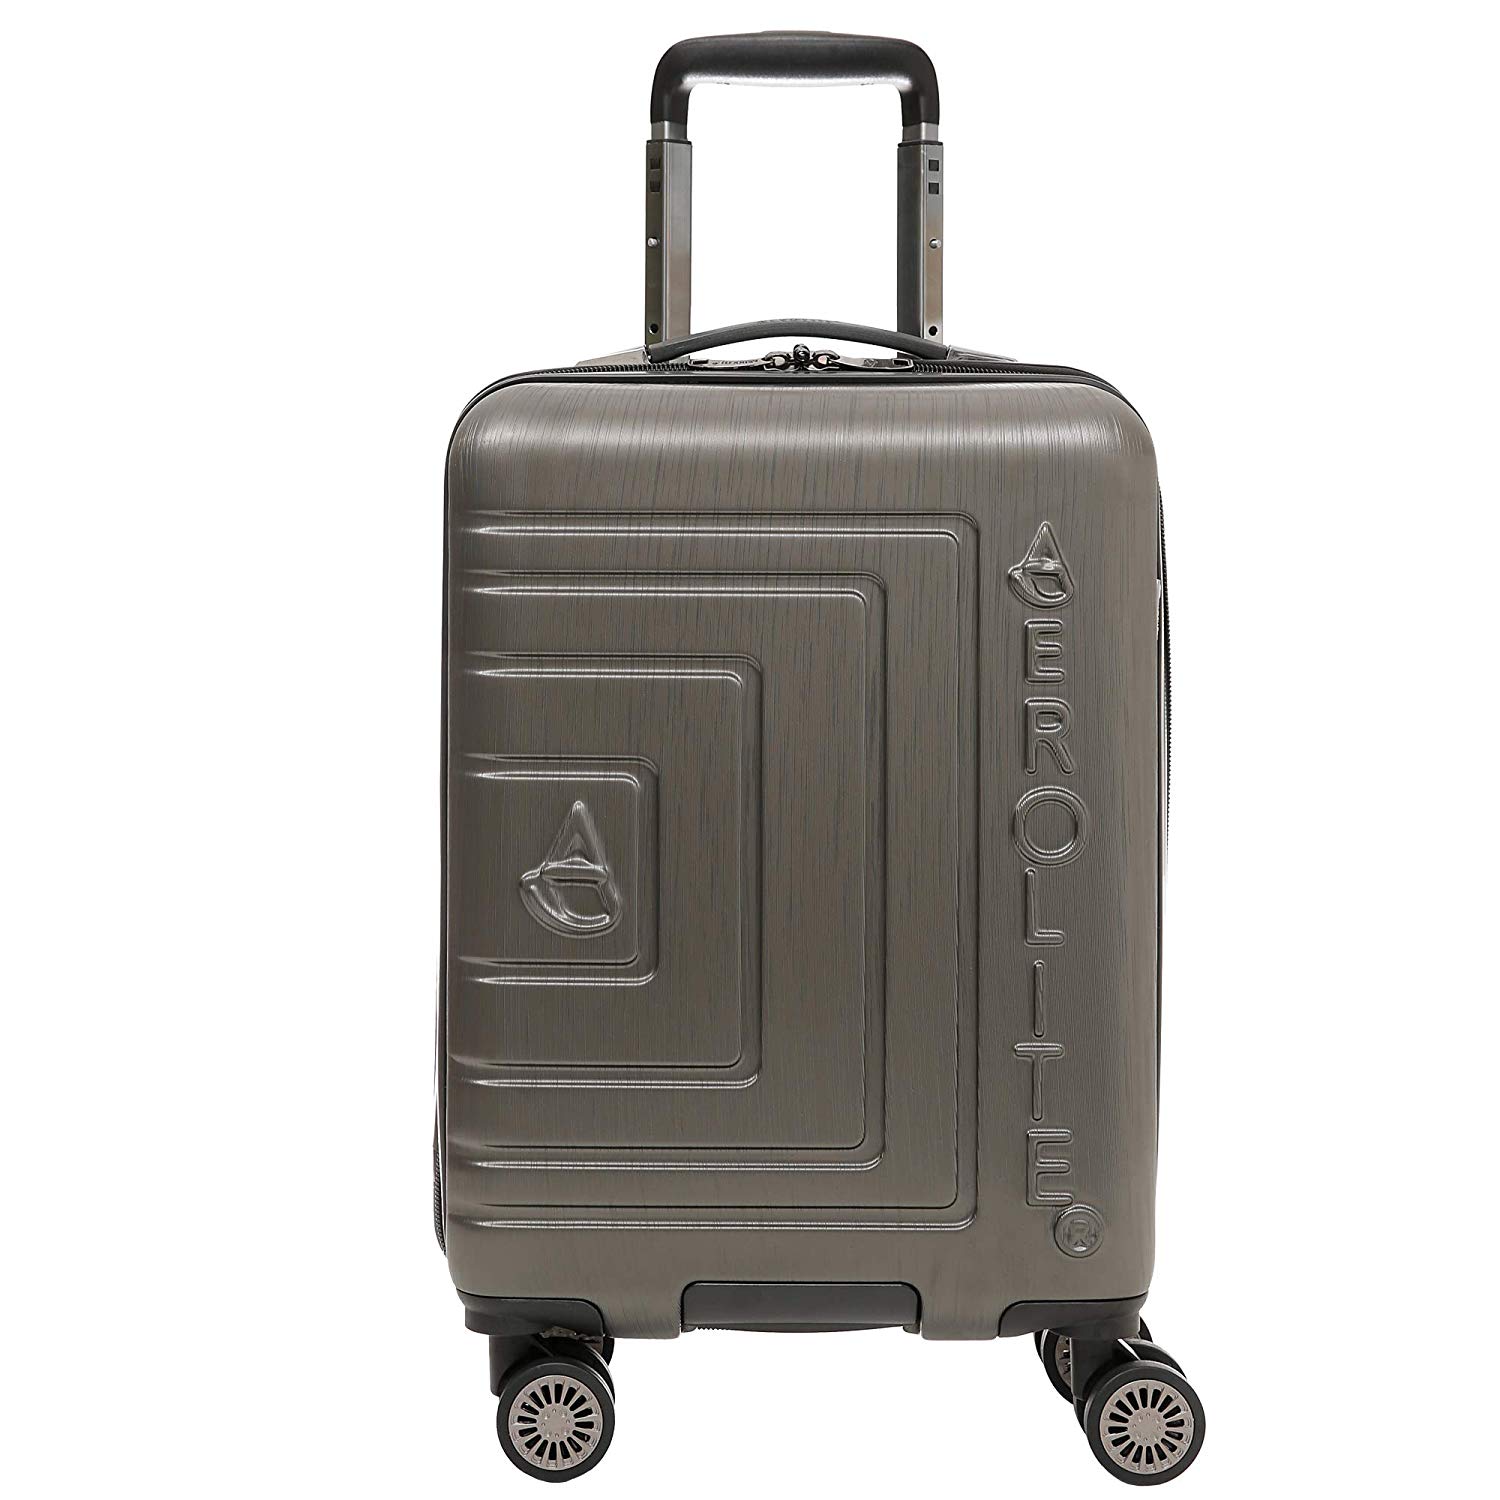 Aerolite Leichtgewicht ABS Hartschale 8 Rollen Handgepäck Trolley Koffer Bordgepäck Kabinentrolley Reisekoffer Gepäck, Genehmigt für Ryanair, easyJet, Lufthansa, und viele mehr, anthrazit